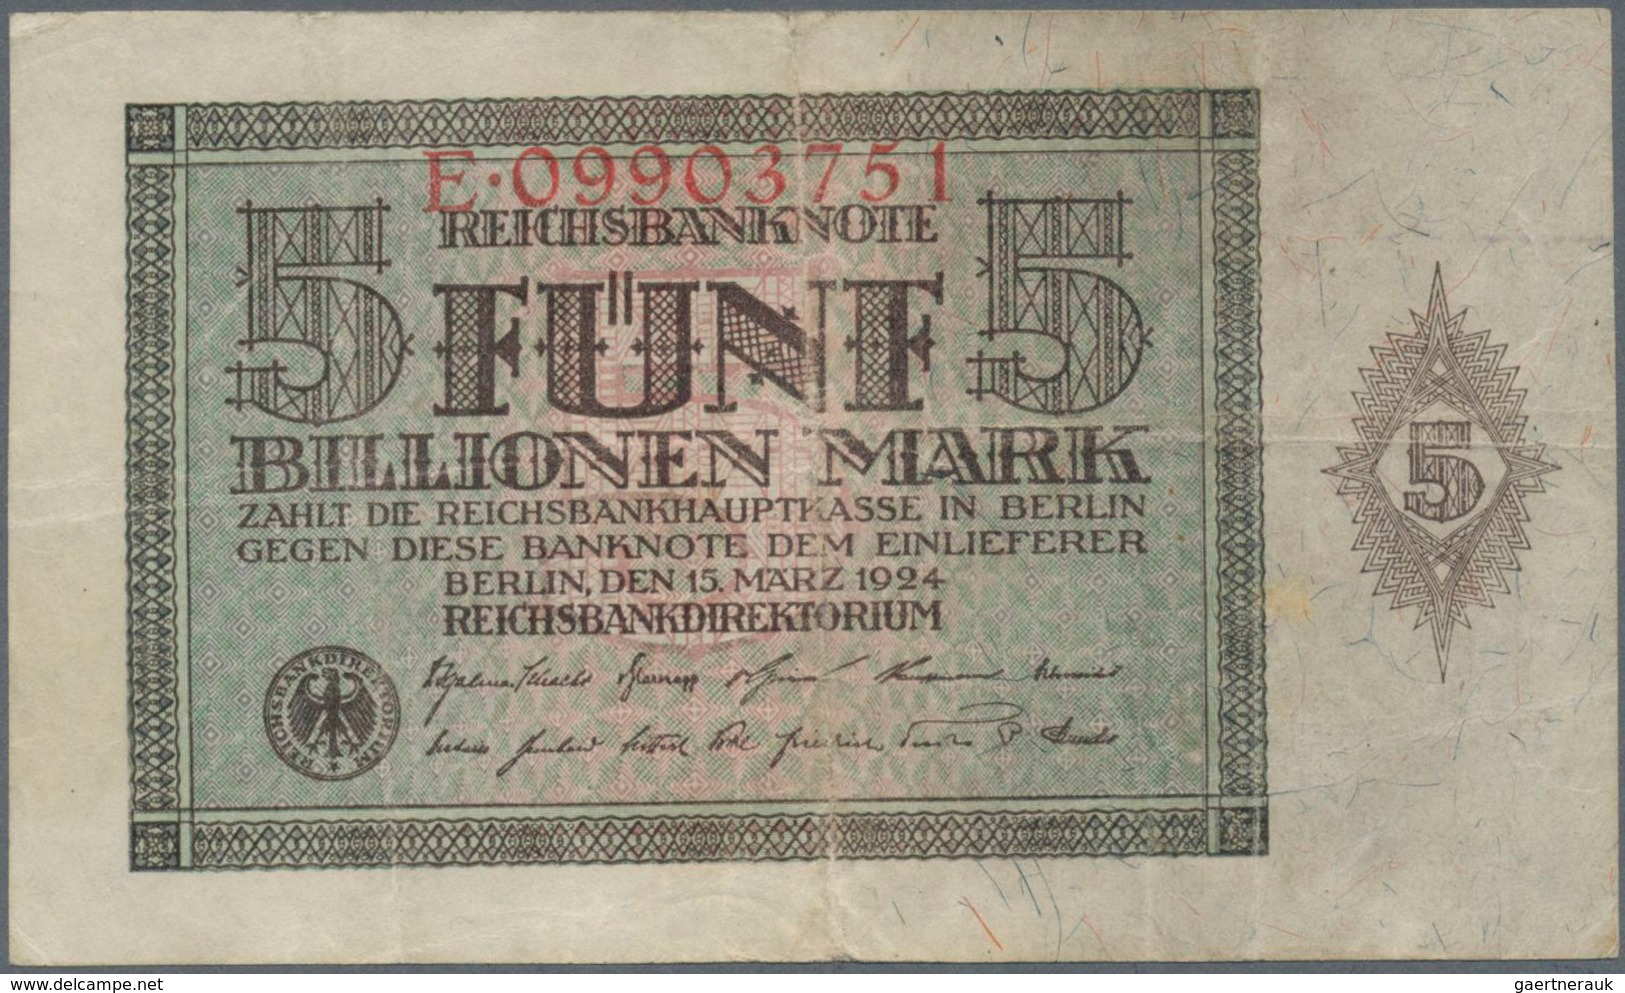 Deutschland: Deutschland mit Nebengebieten, hochwertige Sammlung von ca. 436 Banknoten, dabei enthal